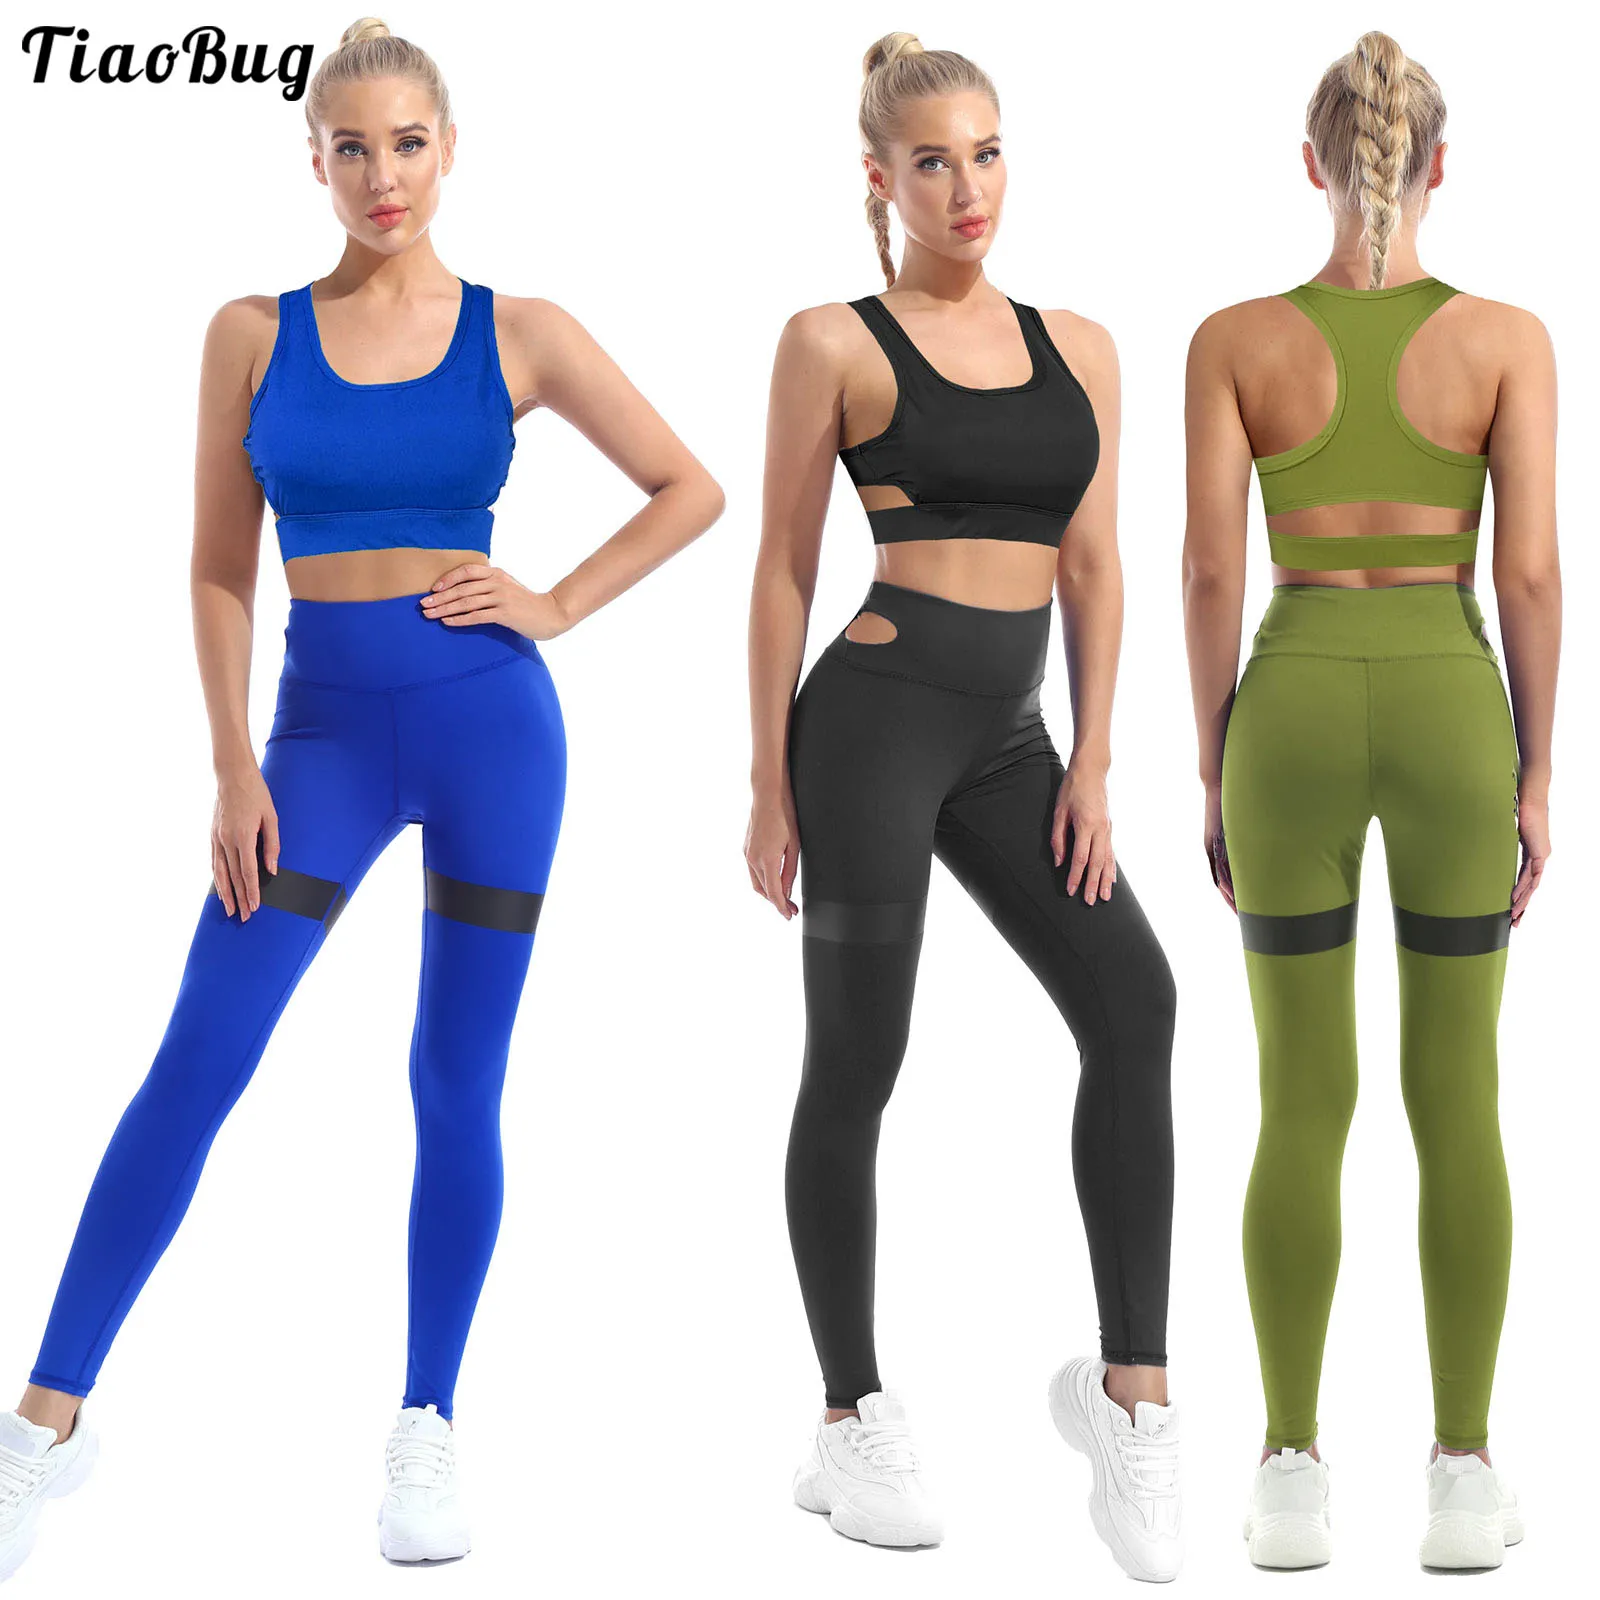 

TiaoBug Summer Women Yoga Sport Suit U Neck Sleeveless Shoulder Straps Racer Back Removable Pads Sport Bra Top Pants Sets